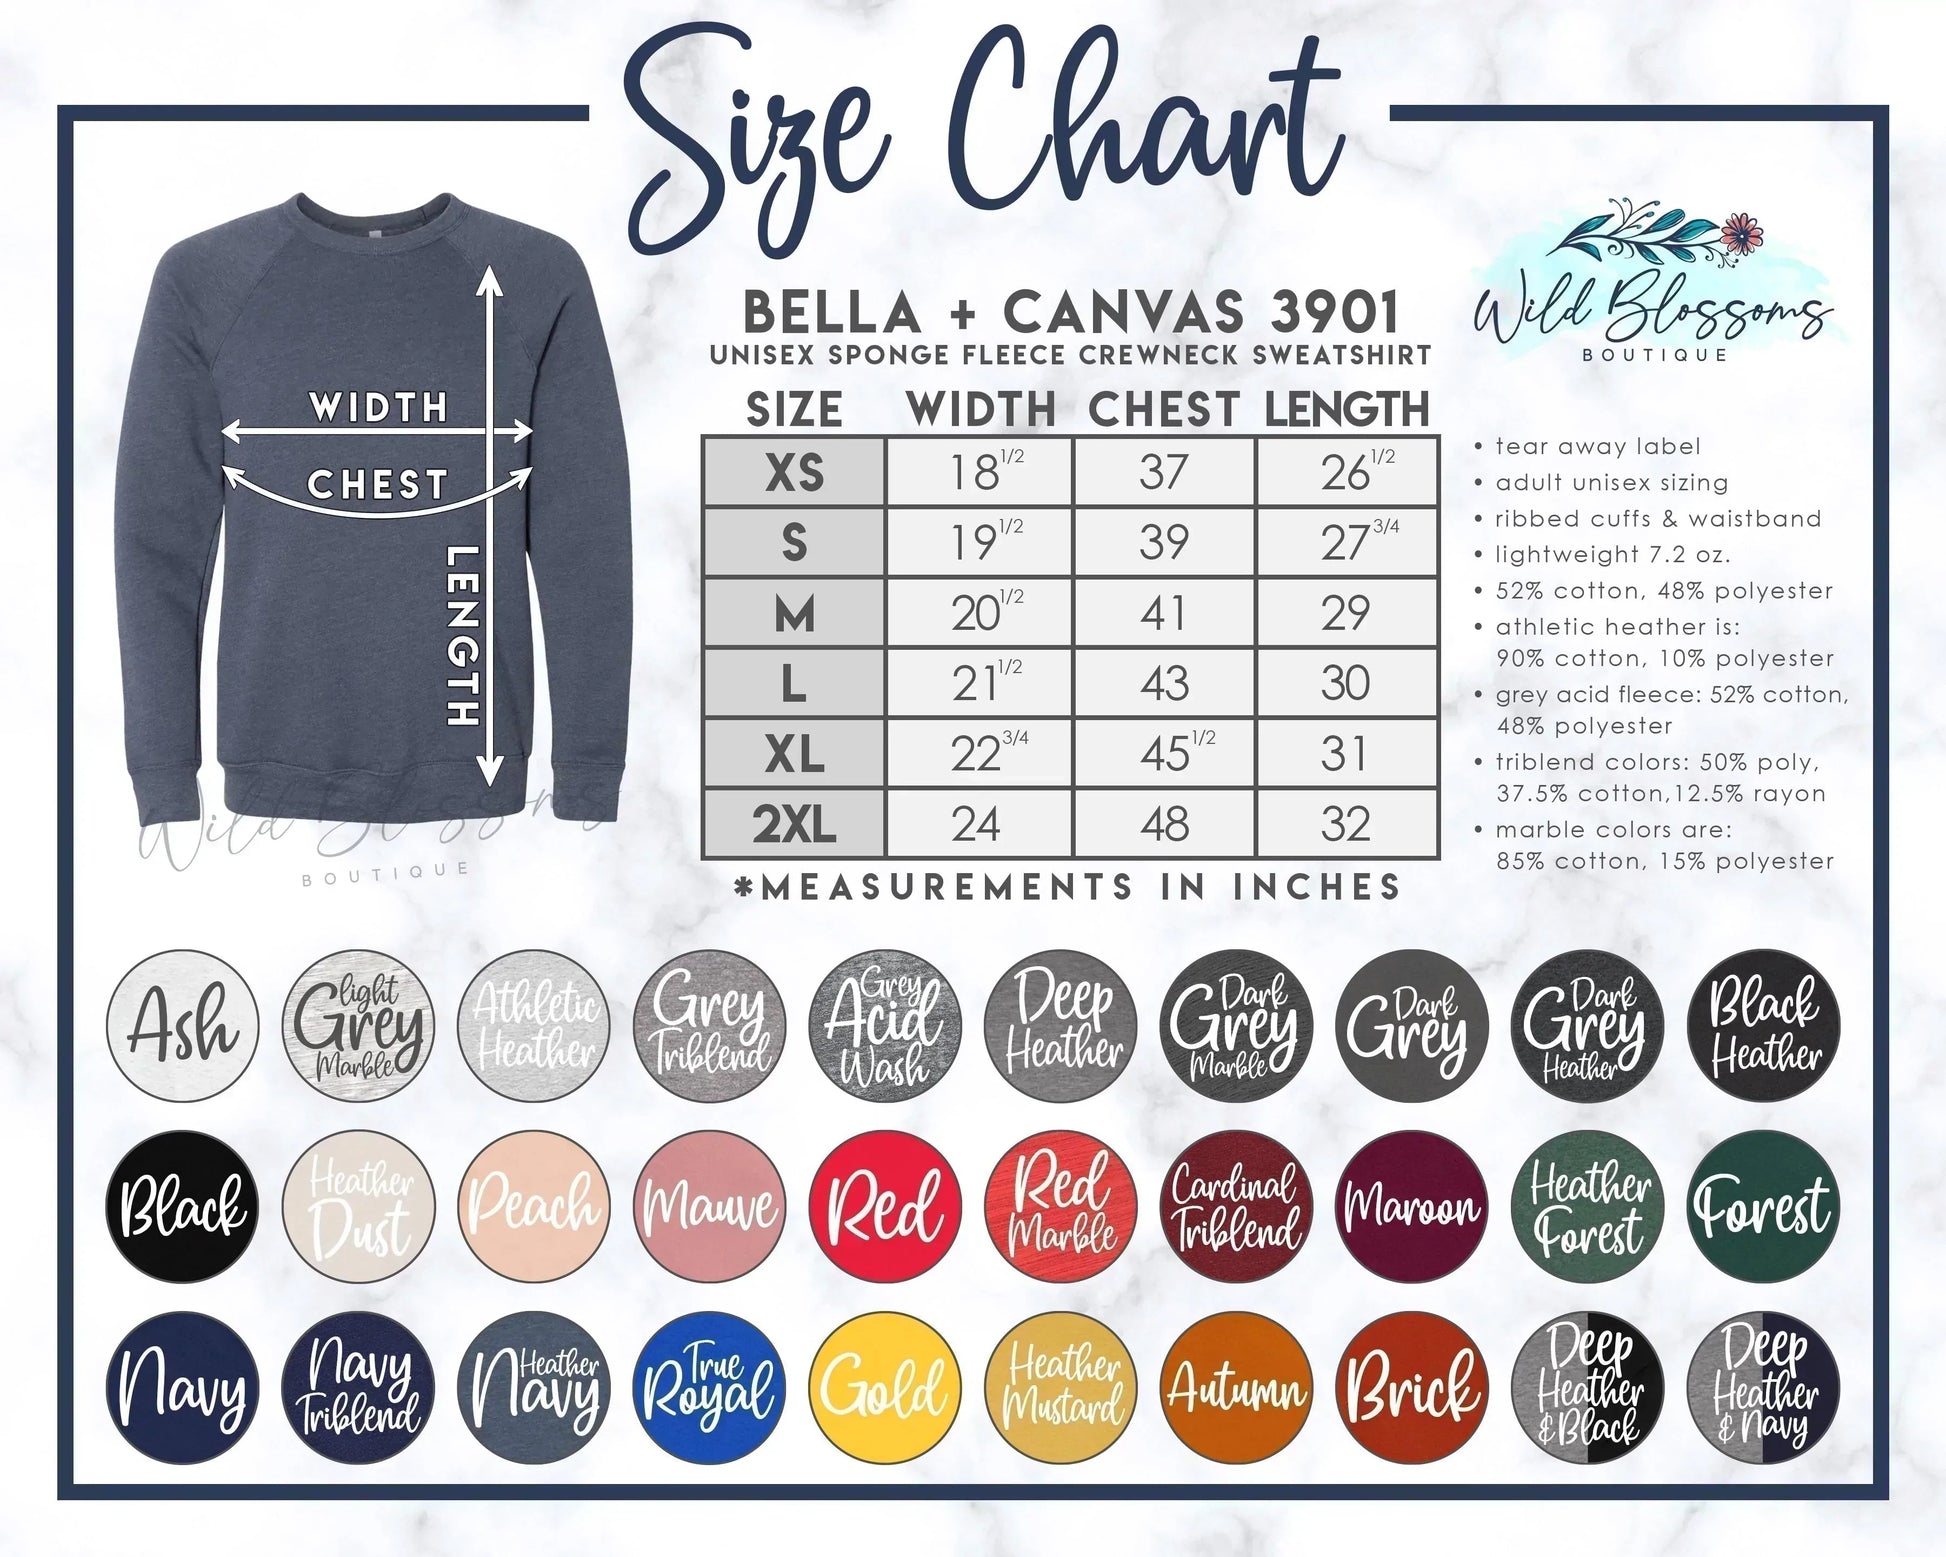 Bella + Canvas 3901 Crewneck Sweatshirt